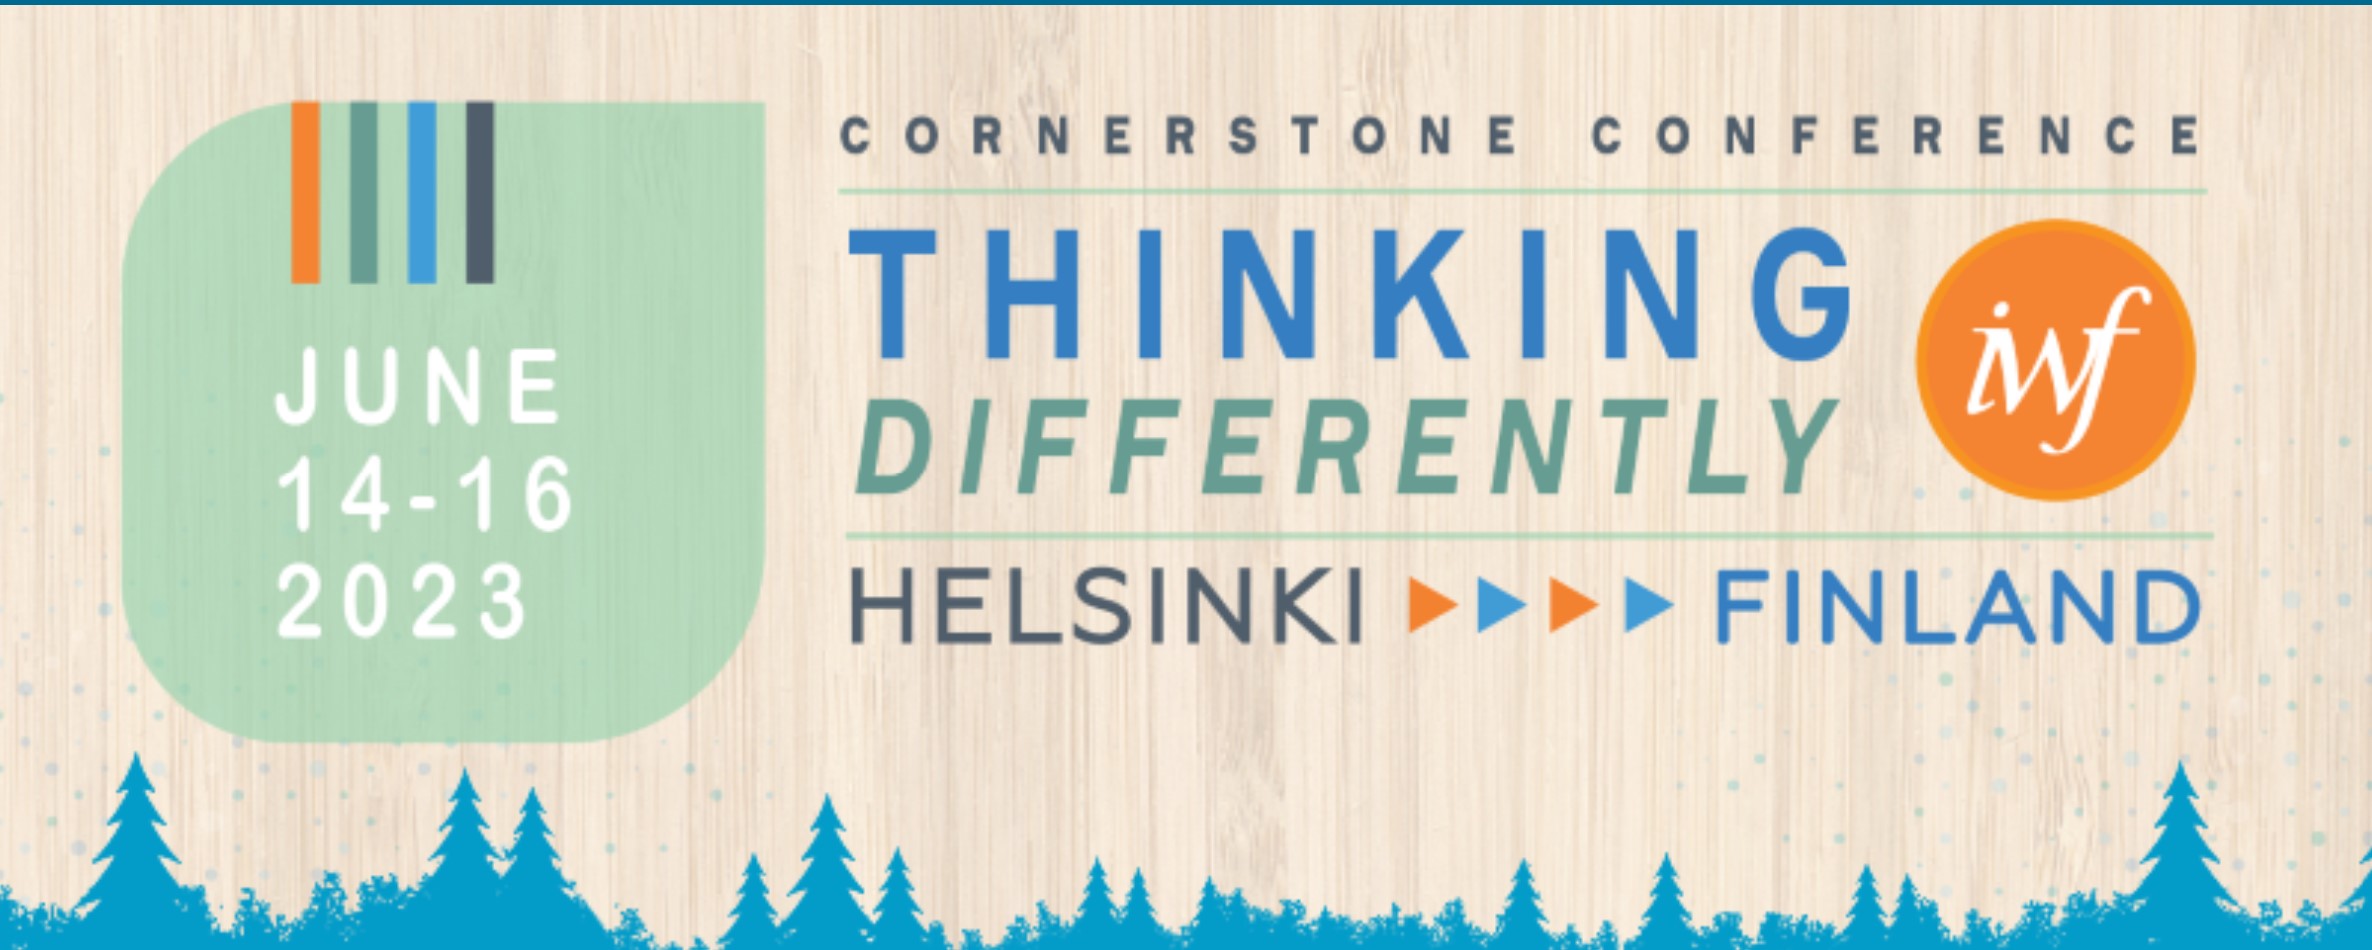 Helsinki, Finlande Conférence Cornerstone de l'IWF 2023, du 14 au 16